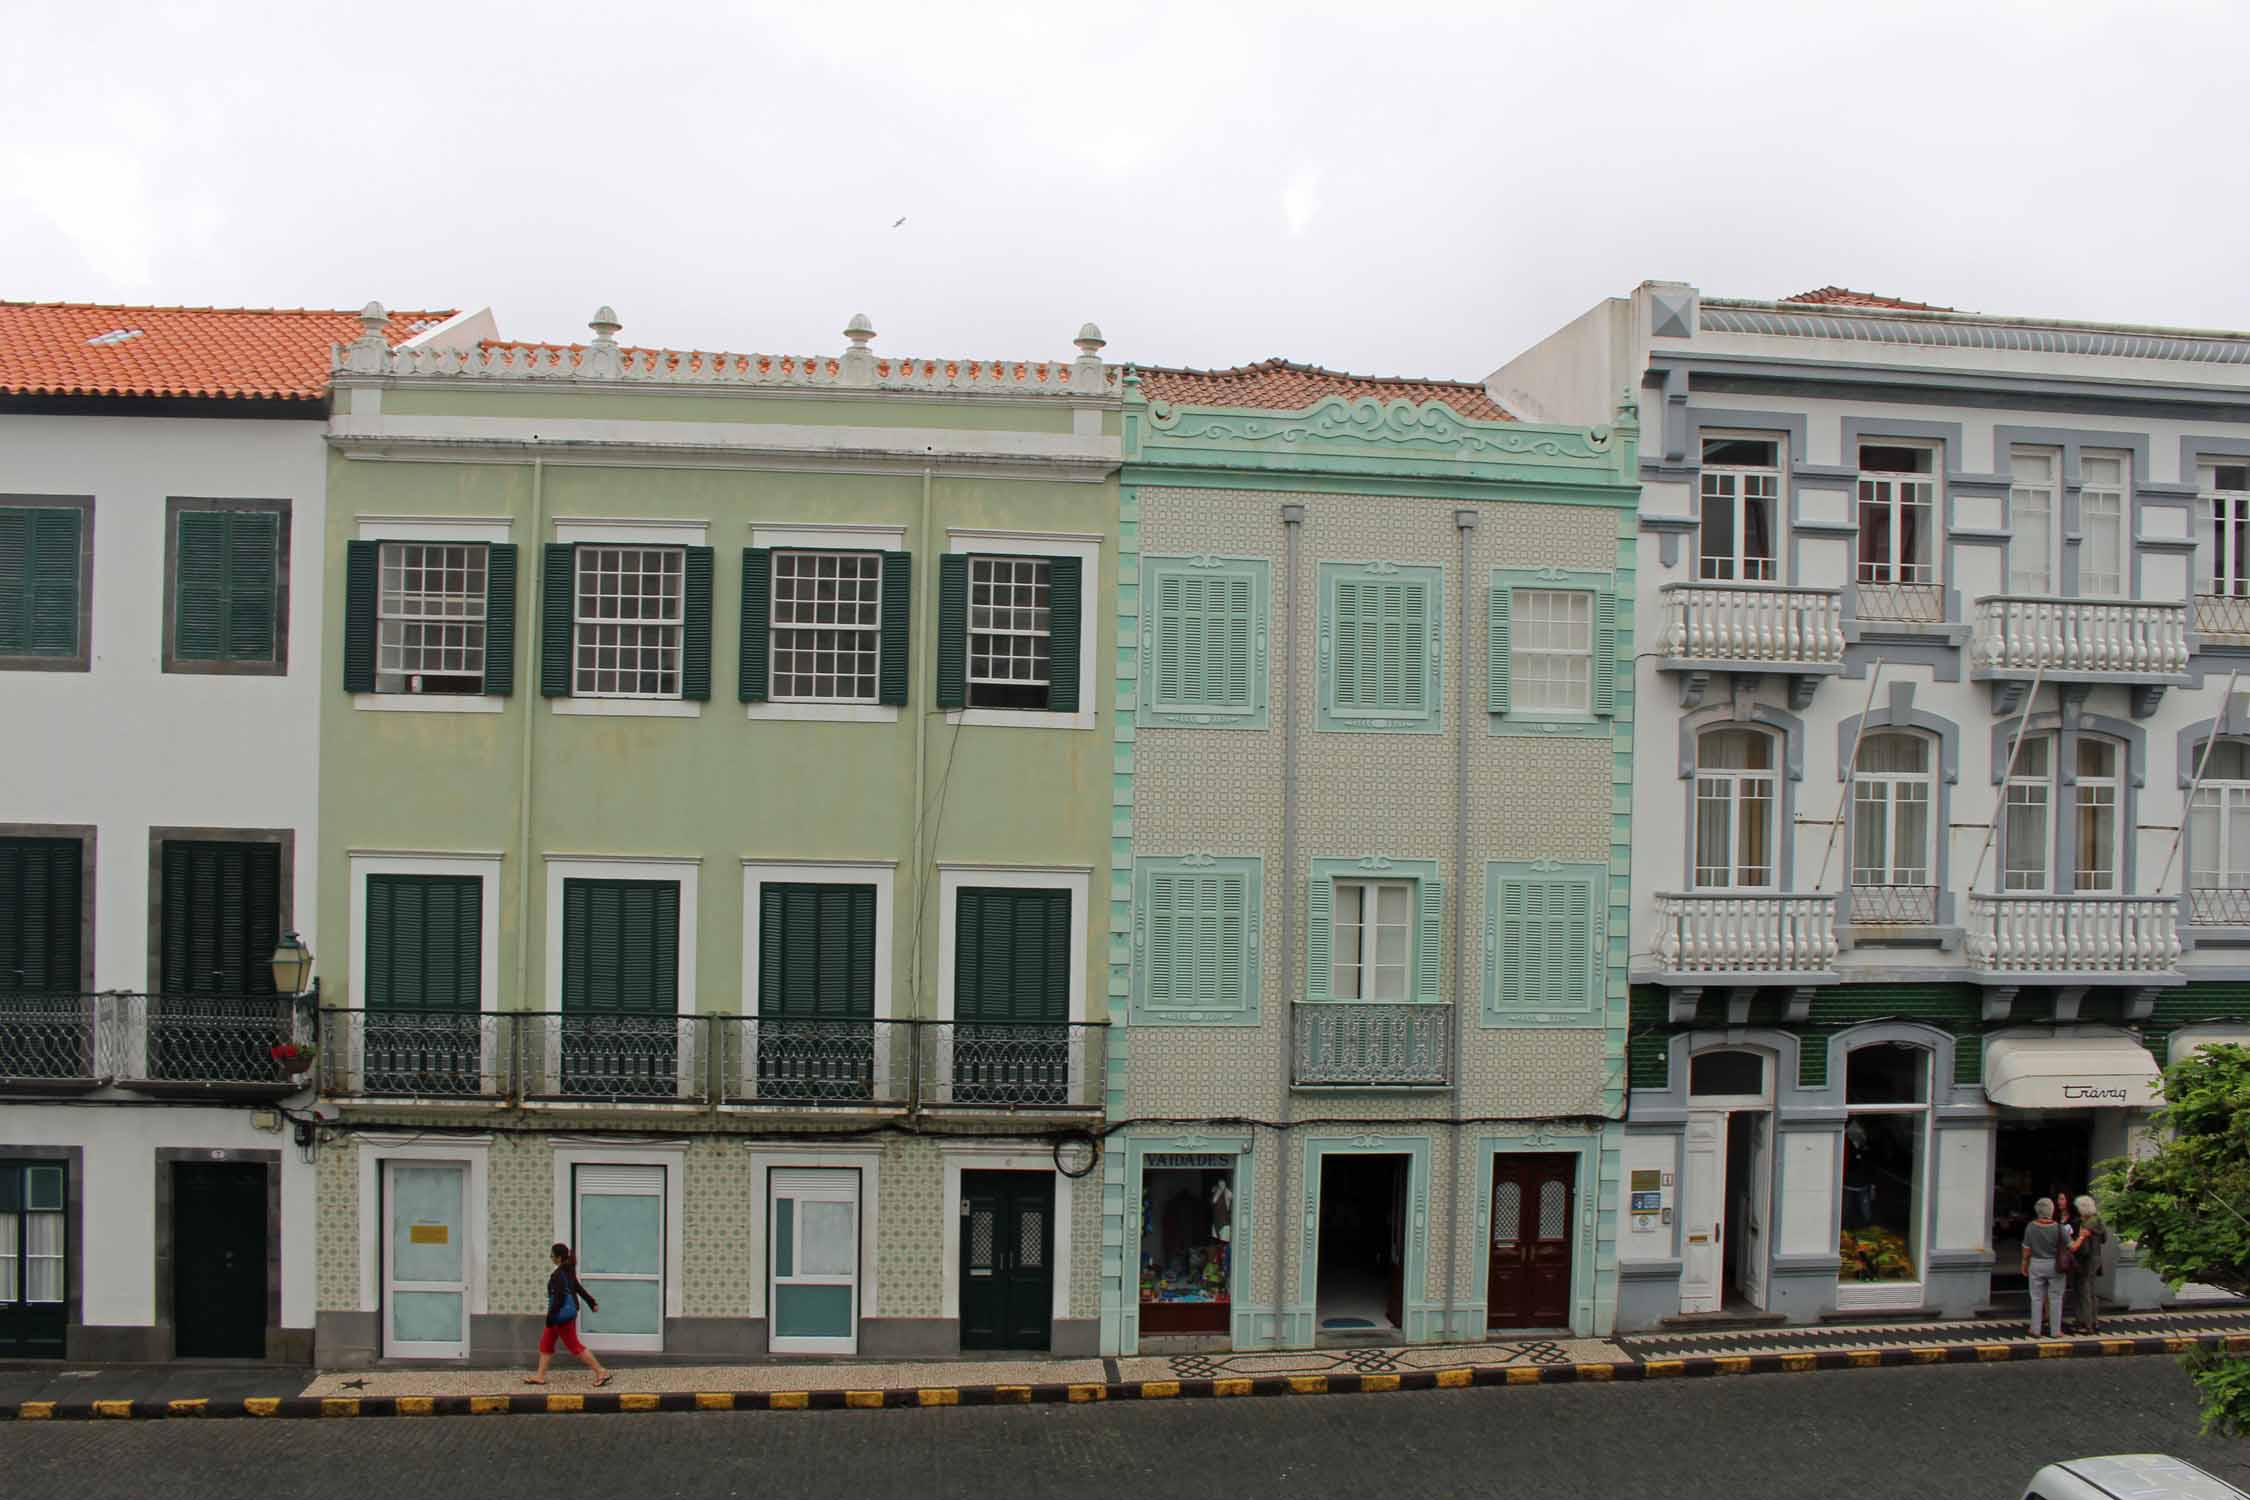 Açores, Île de Faial, Horta, maisons typiques